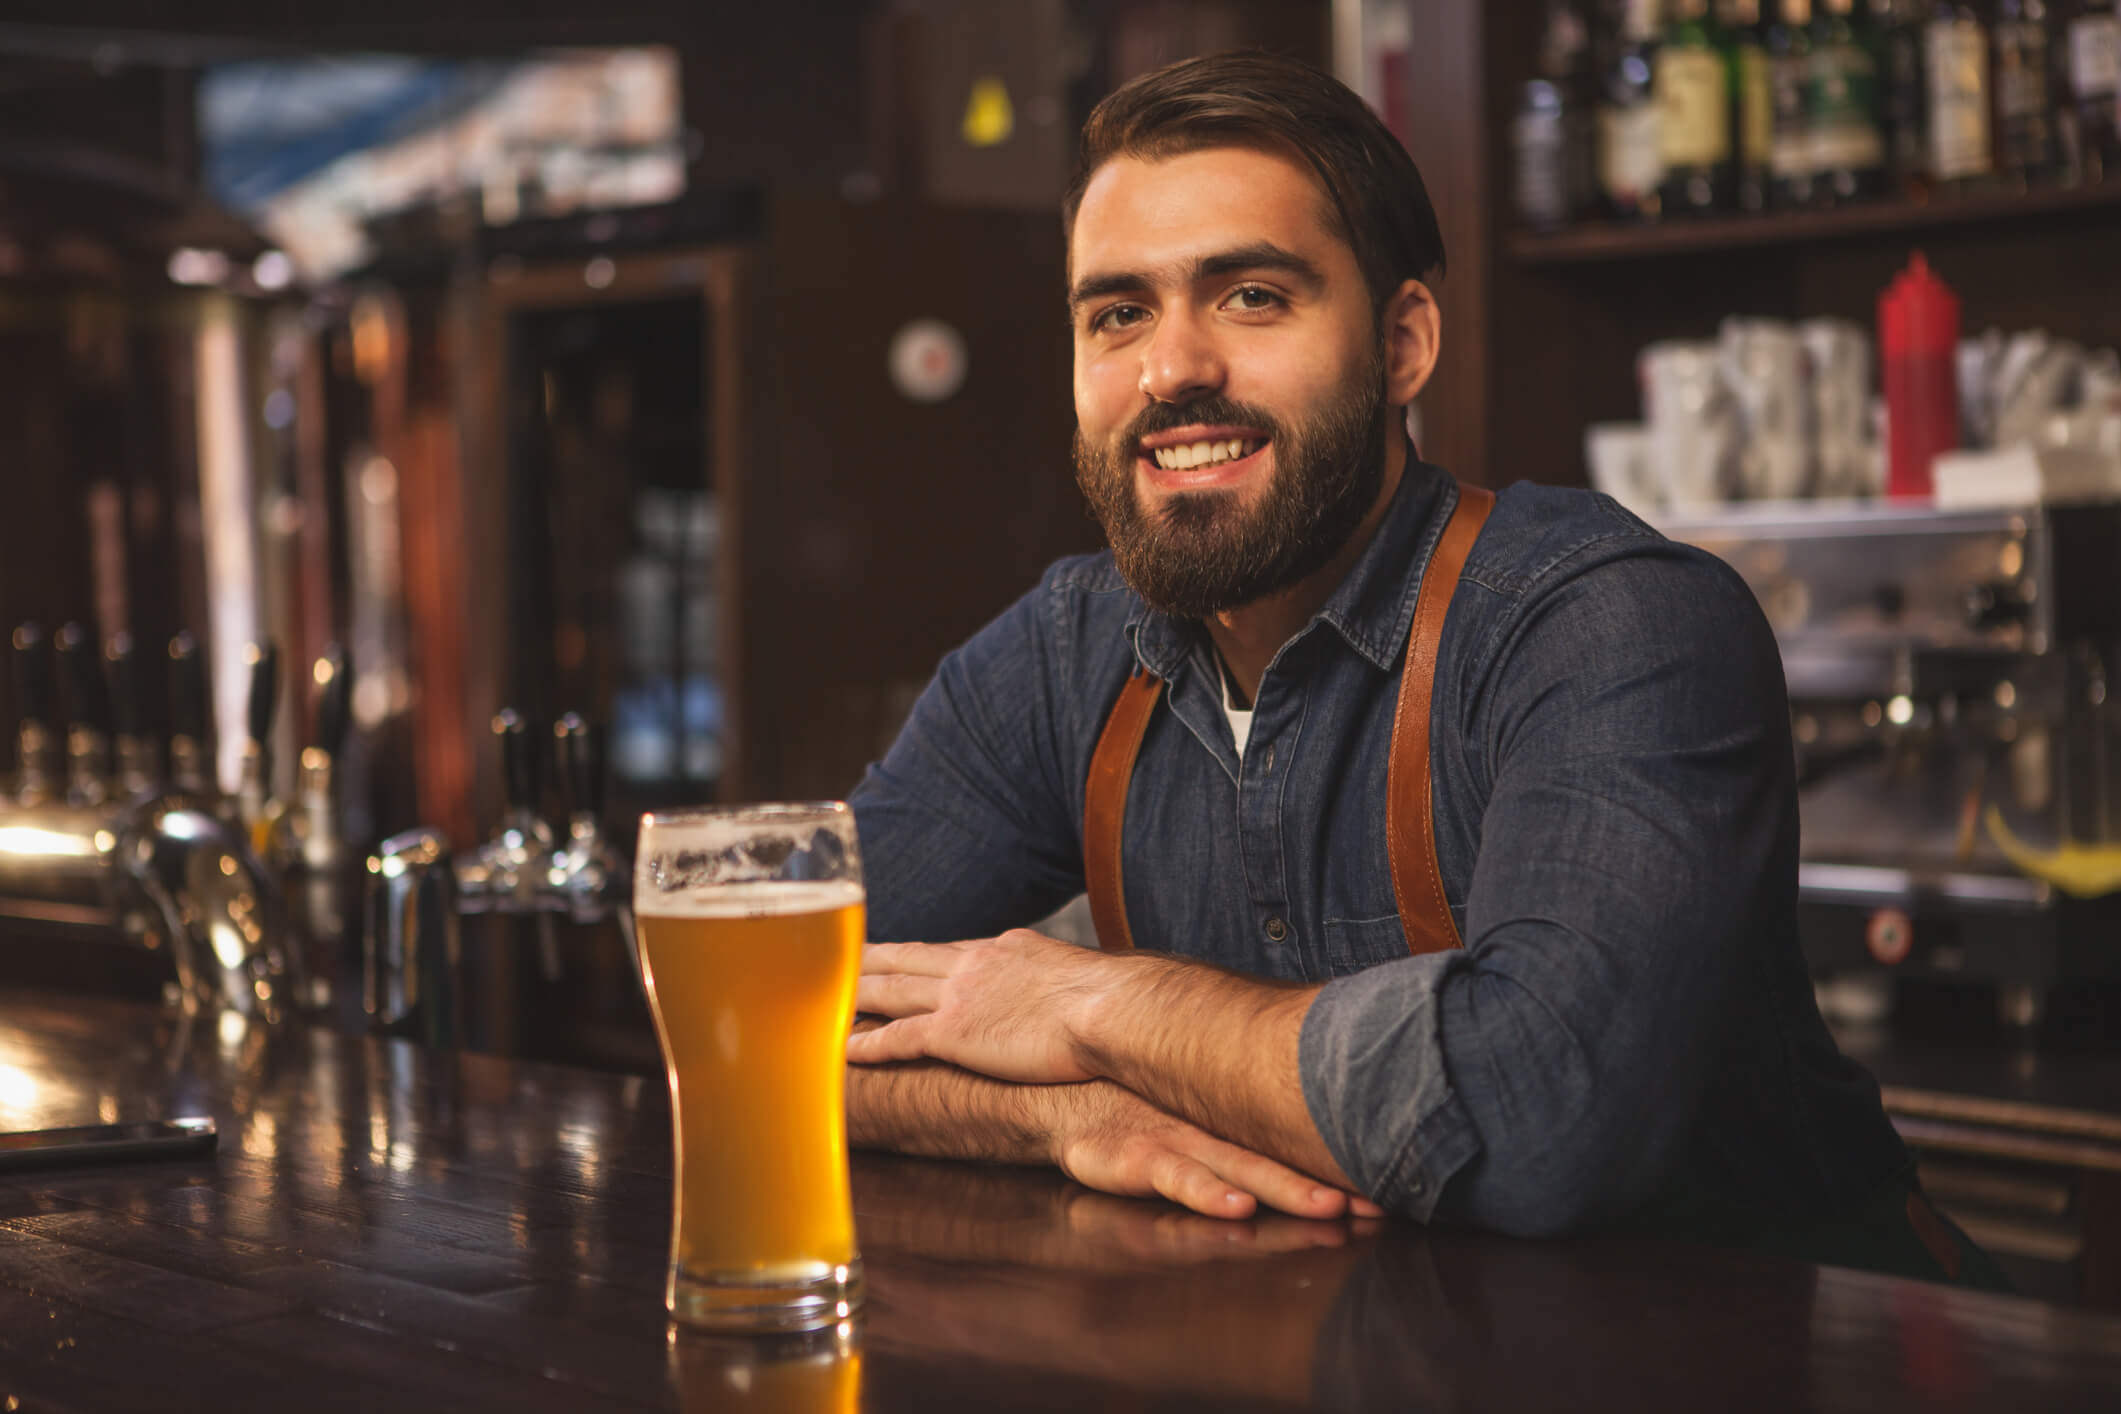 Smiling bartender serving a beer